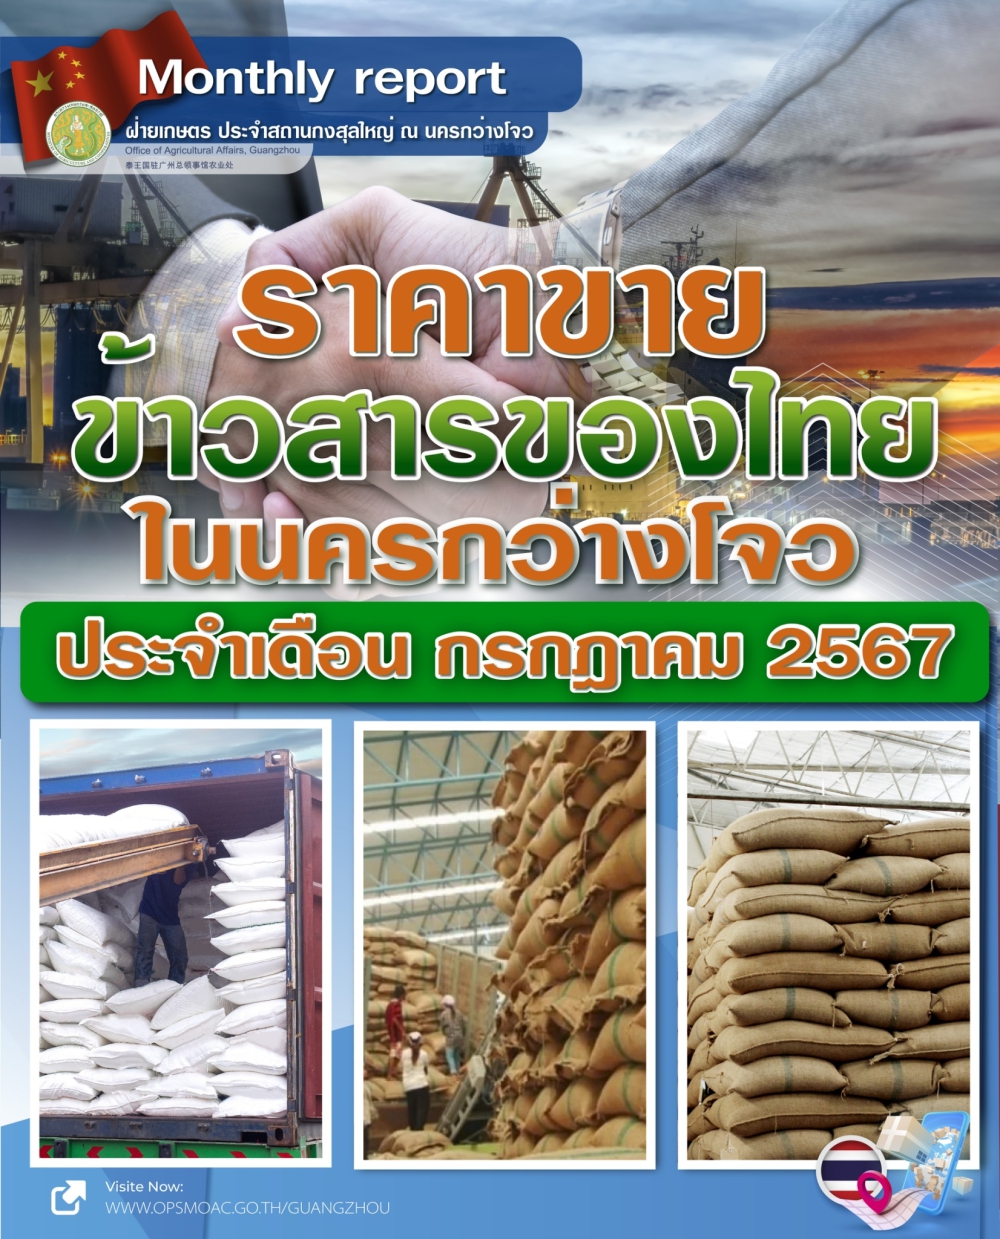 ราคาขายข้าวสารของไทยในนครกว่างโจว